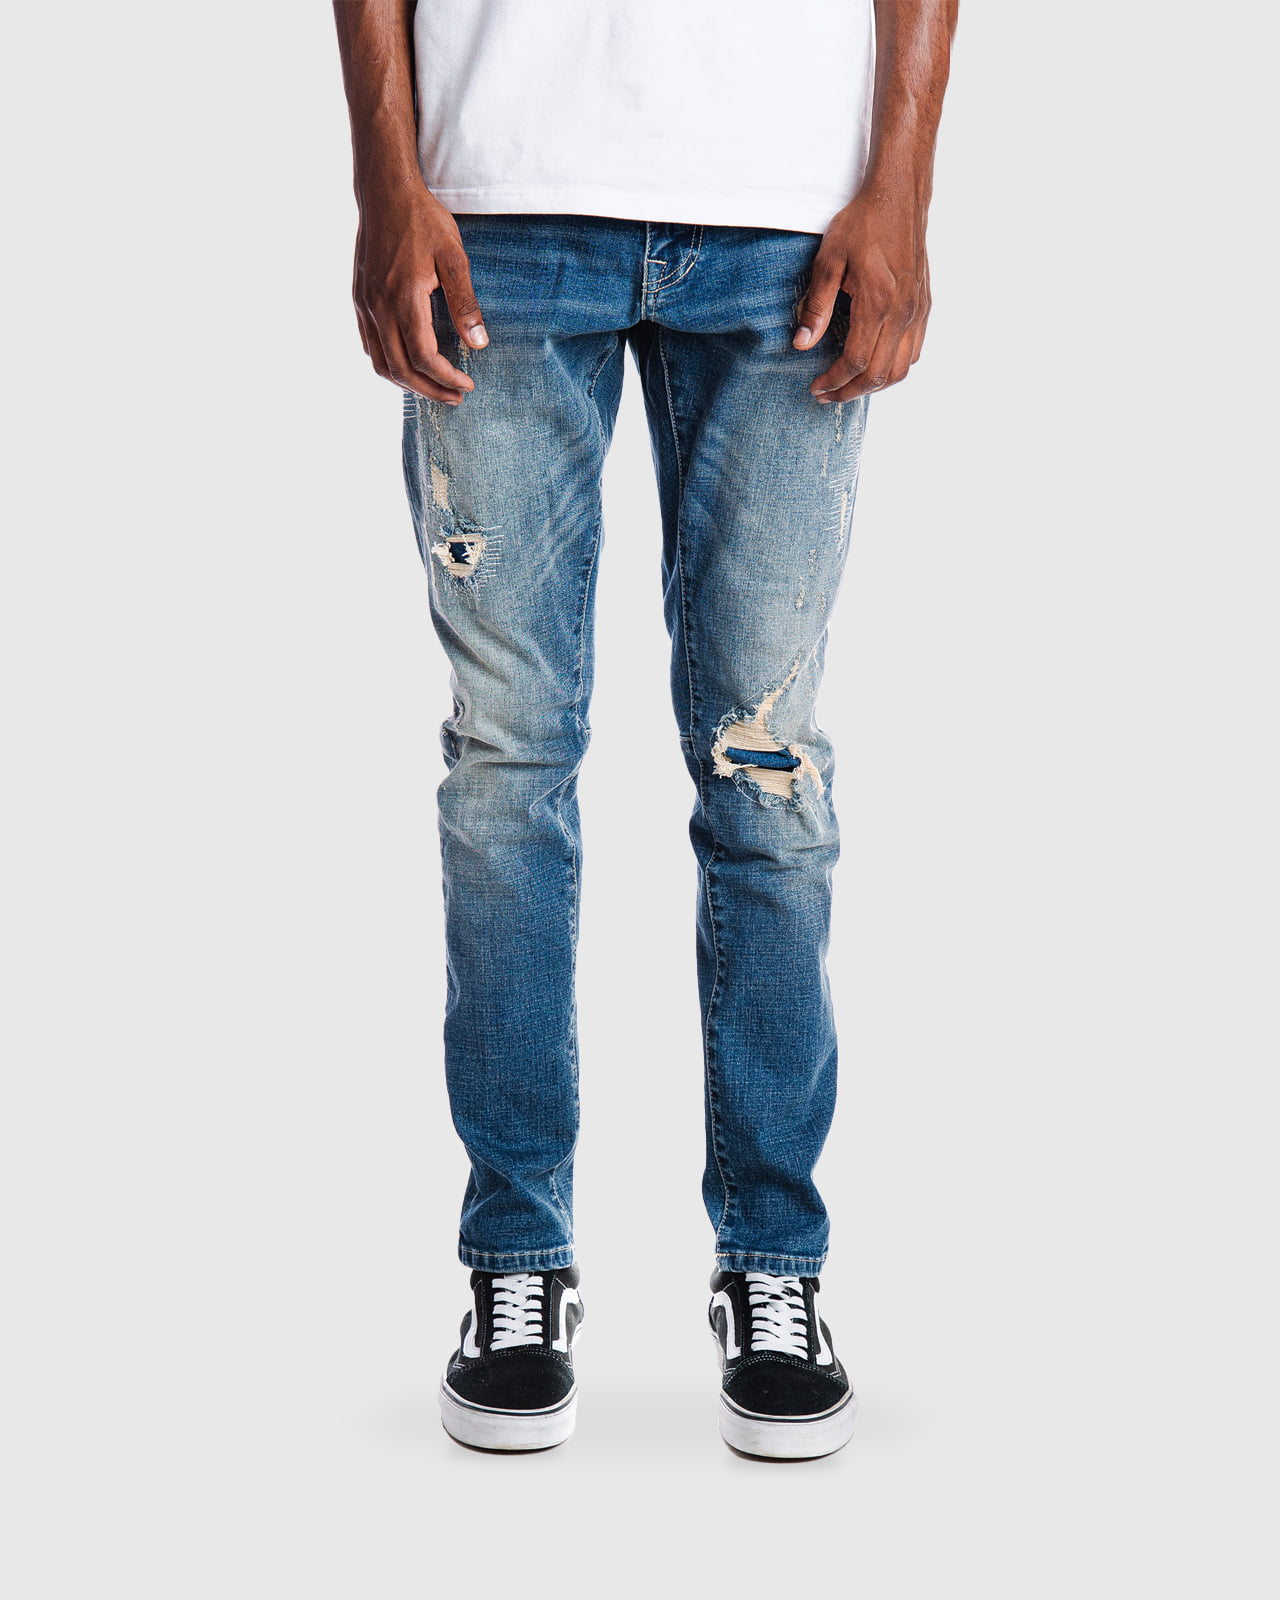 Rip and repair semi-basic jeans